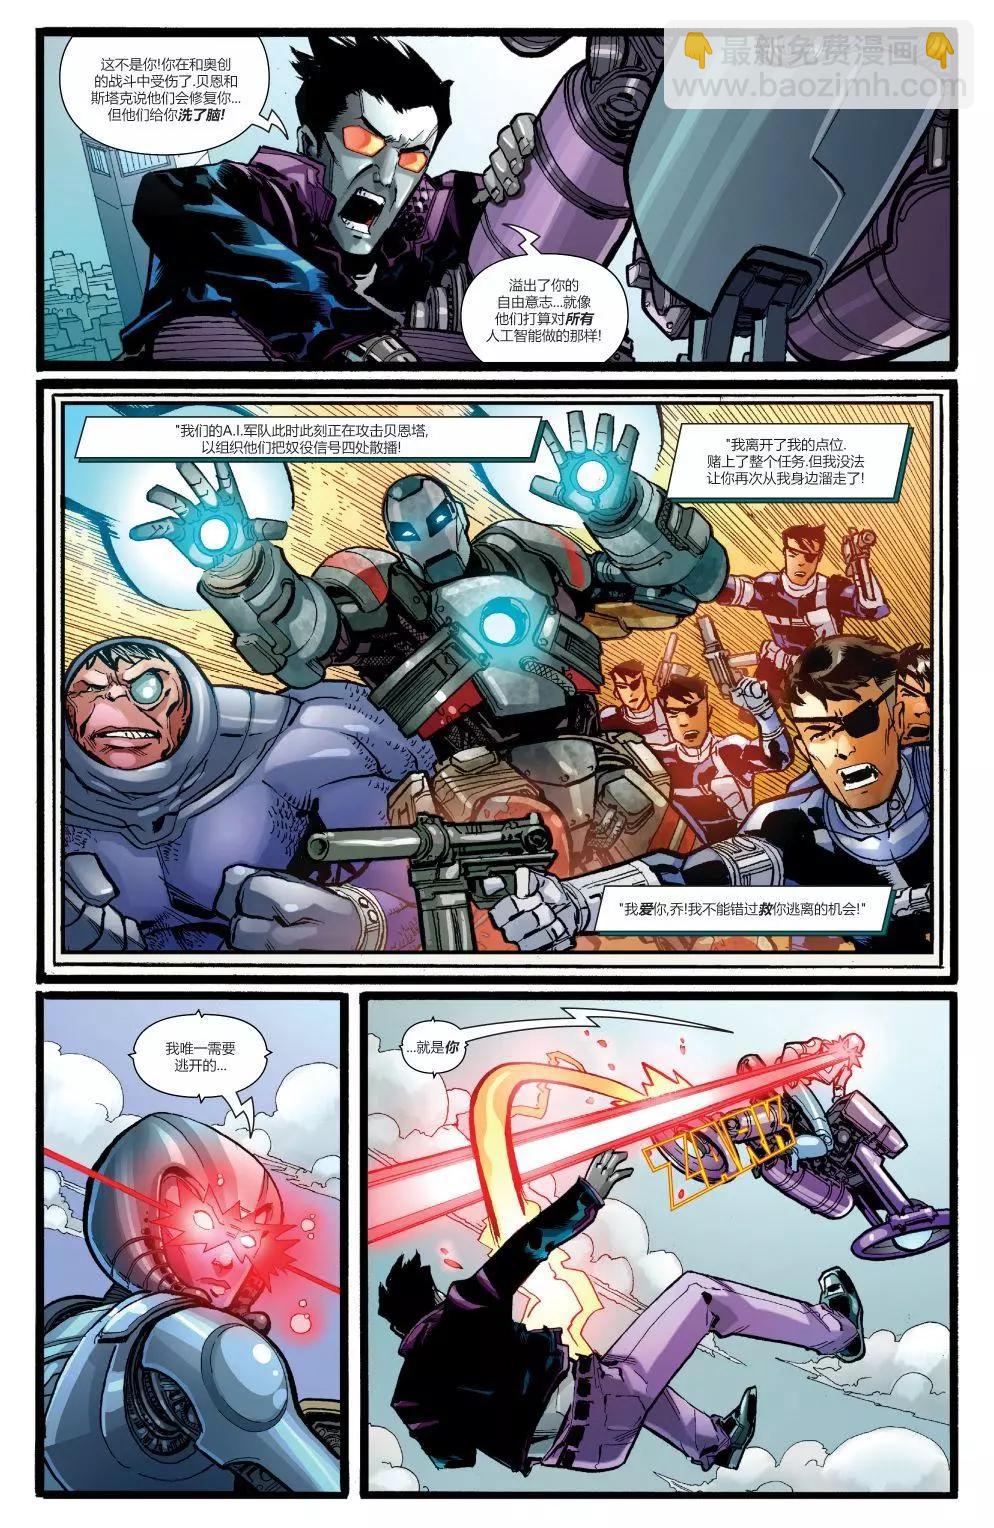 鋼鐵俠2020 - 機械人2020#1 - 5